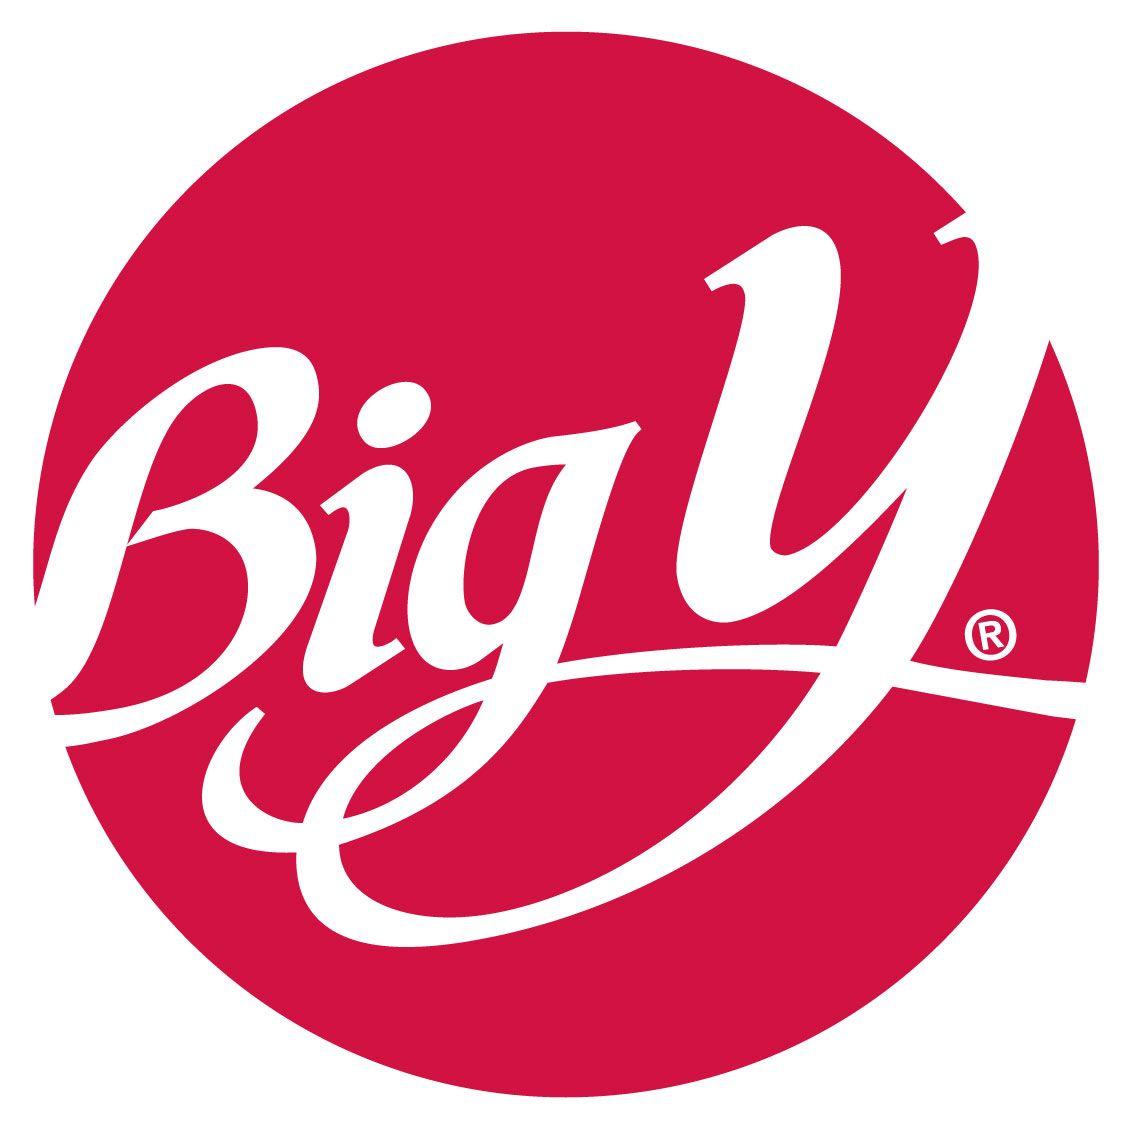 Big Y Logo - File:Big Y Logo.jpg - Wikimedia Commons